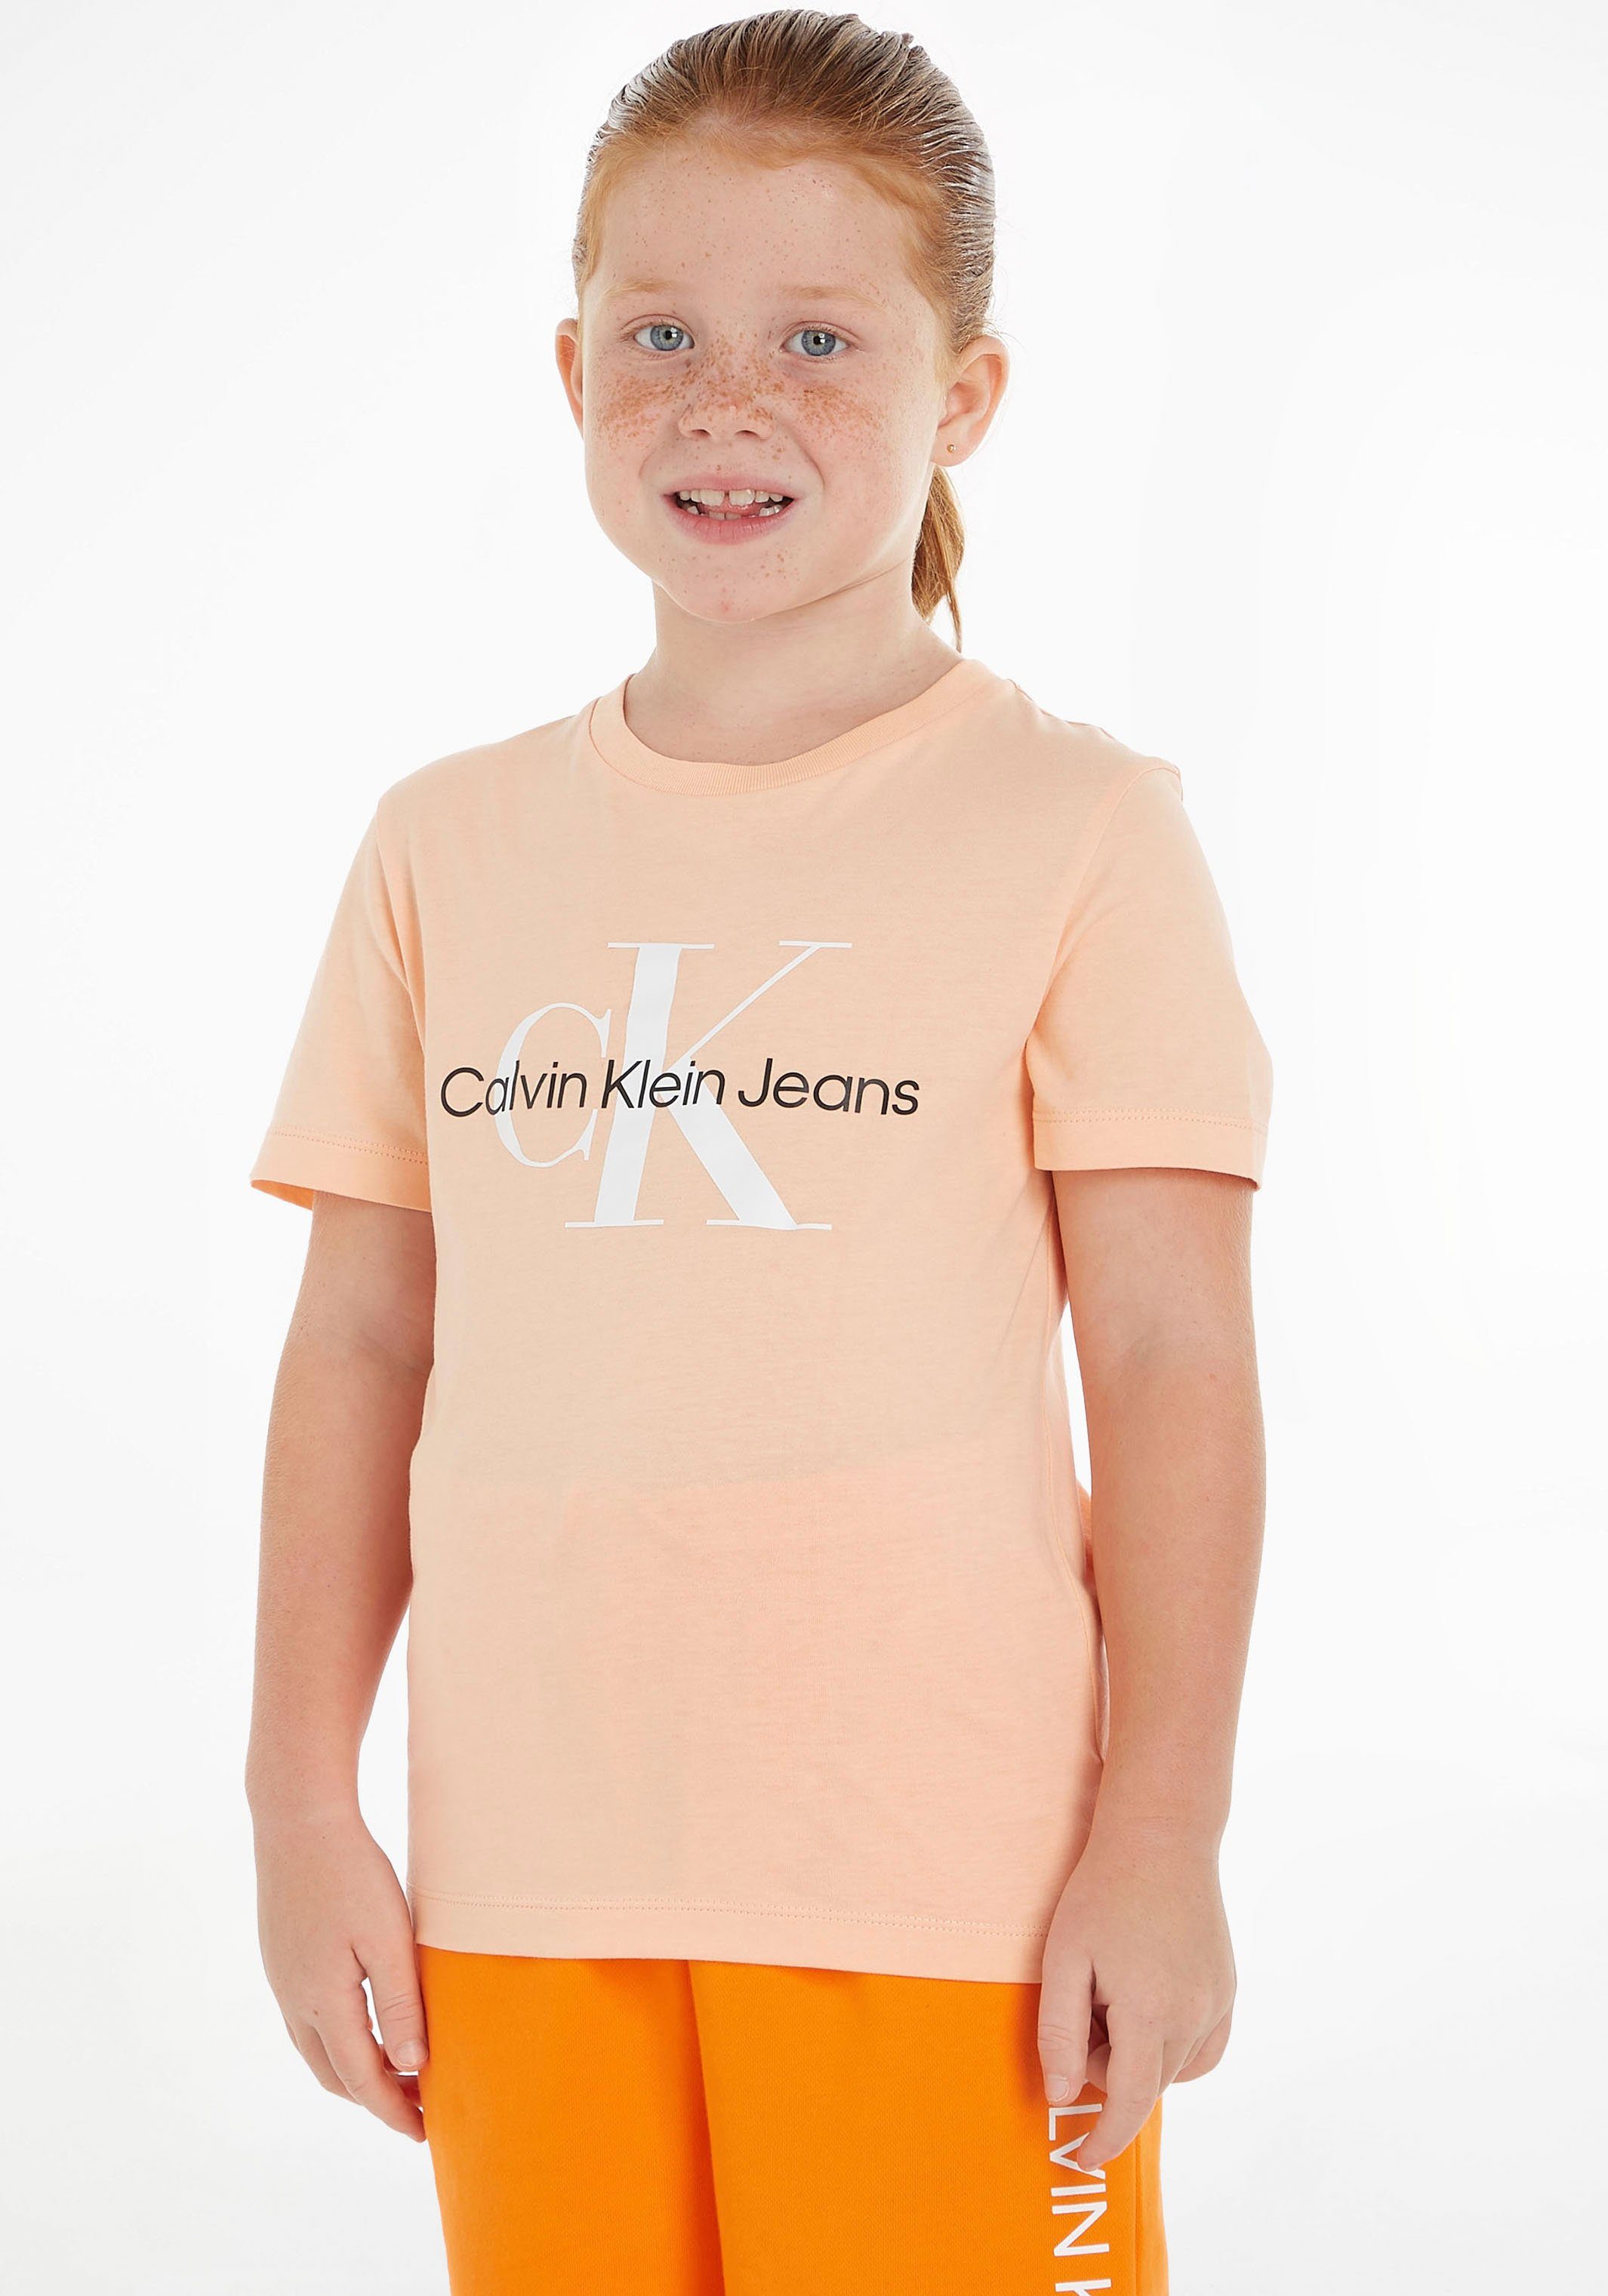 Calvin Klein Jeans T-Shirt MONOGRAM hellorange LOGO Jungen Mädchen Kinder MiniMe,für Junior T-SHIRT Kids und